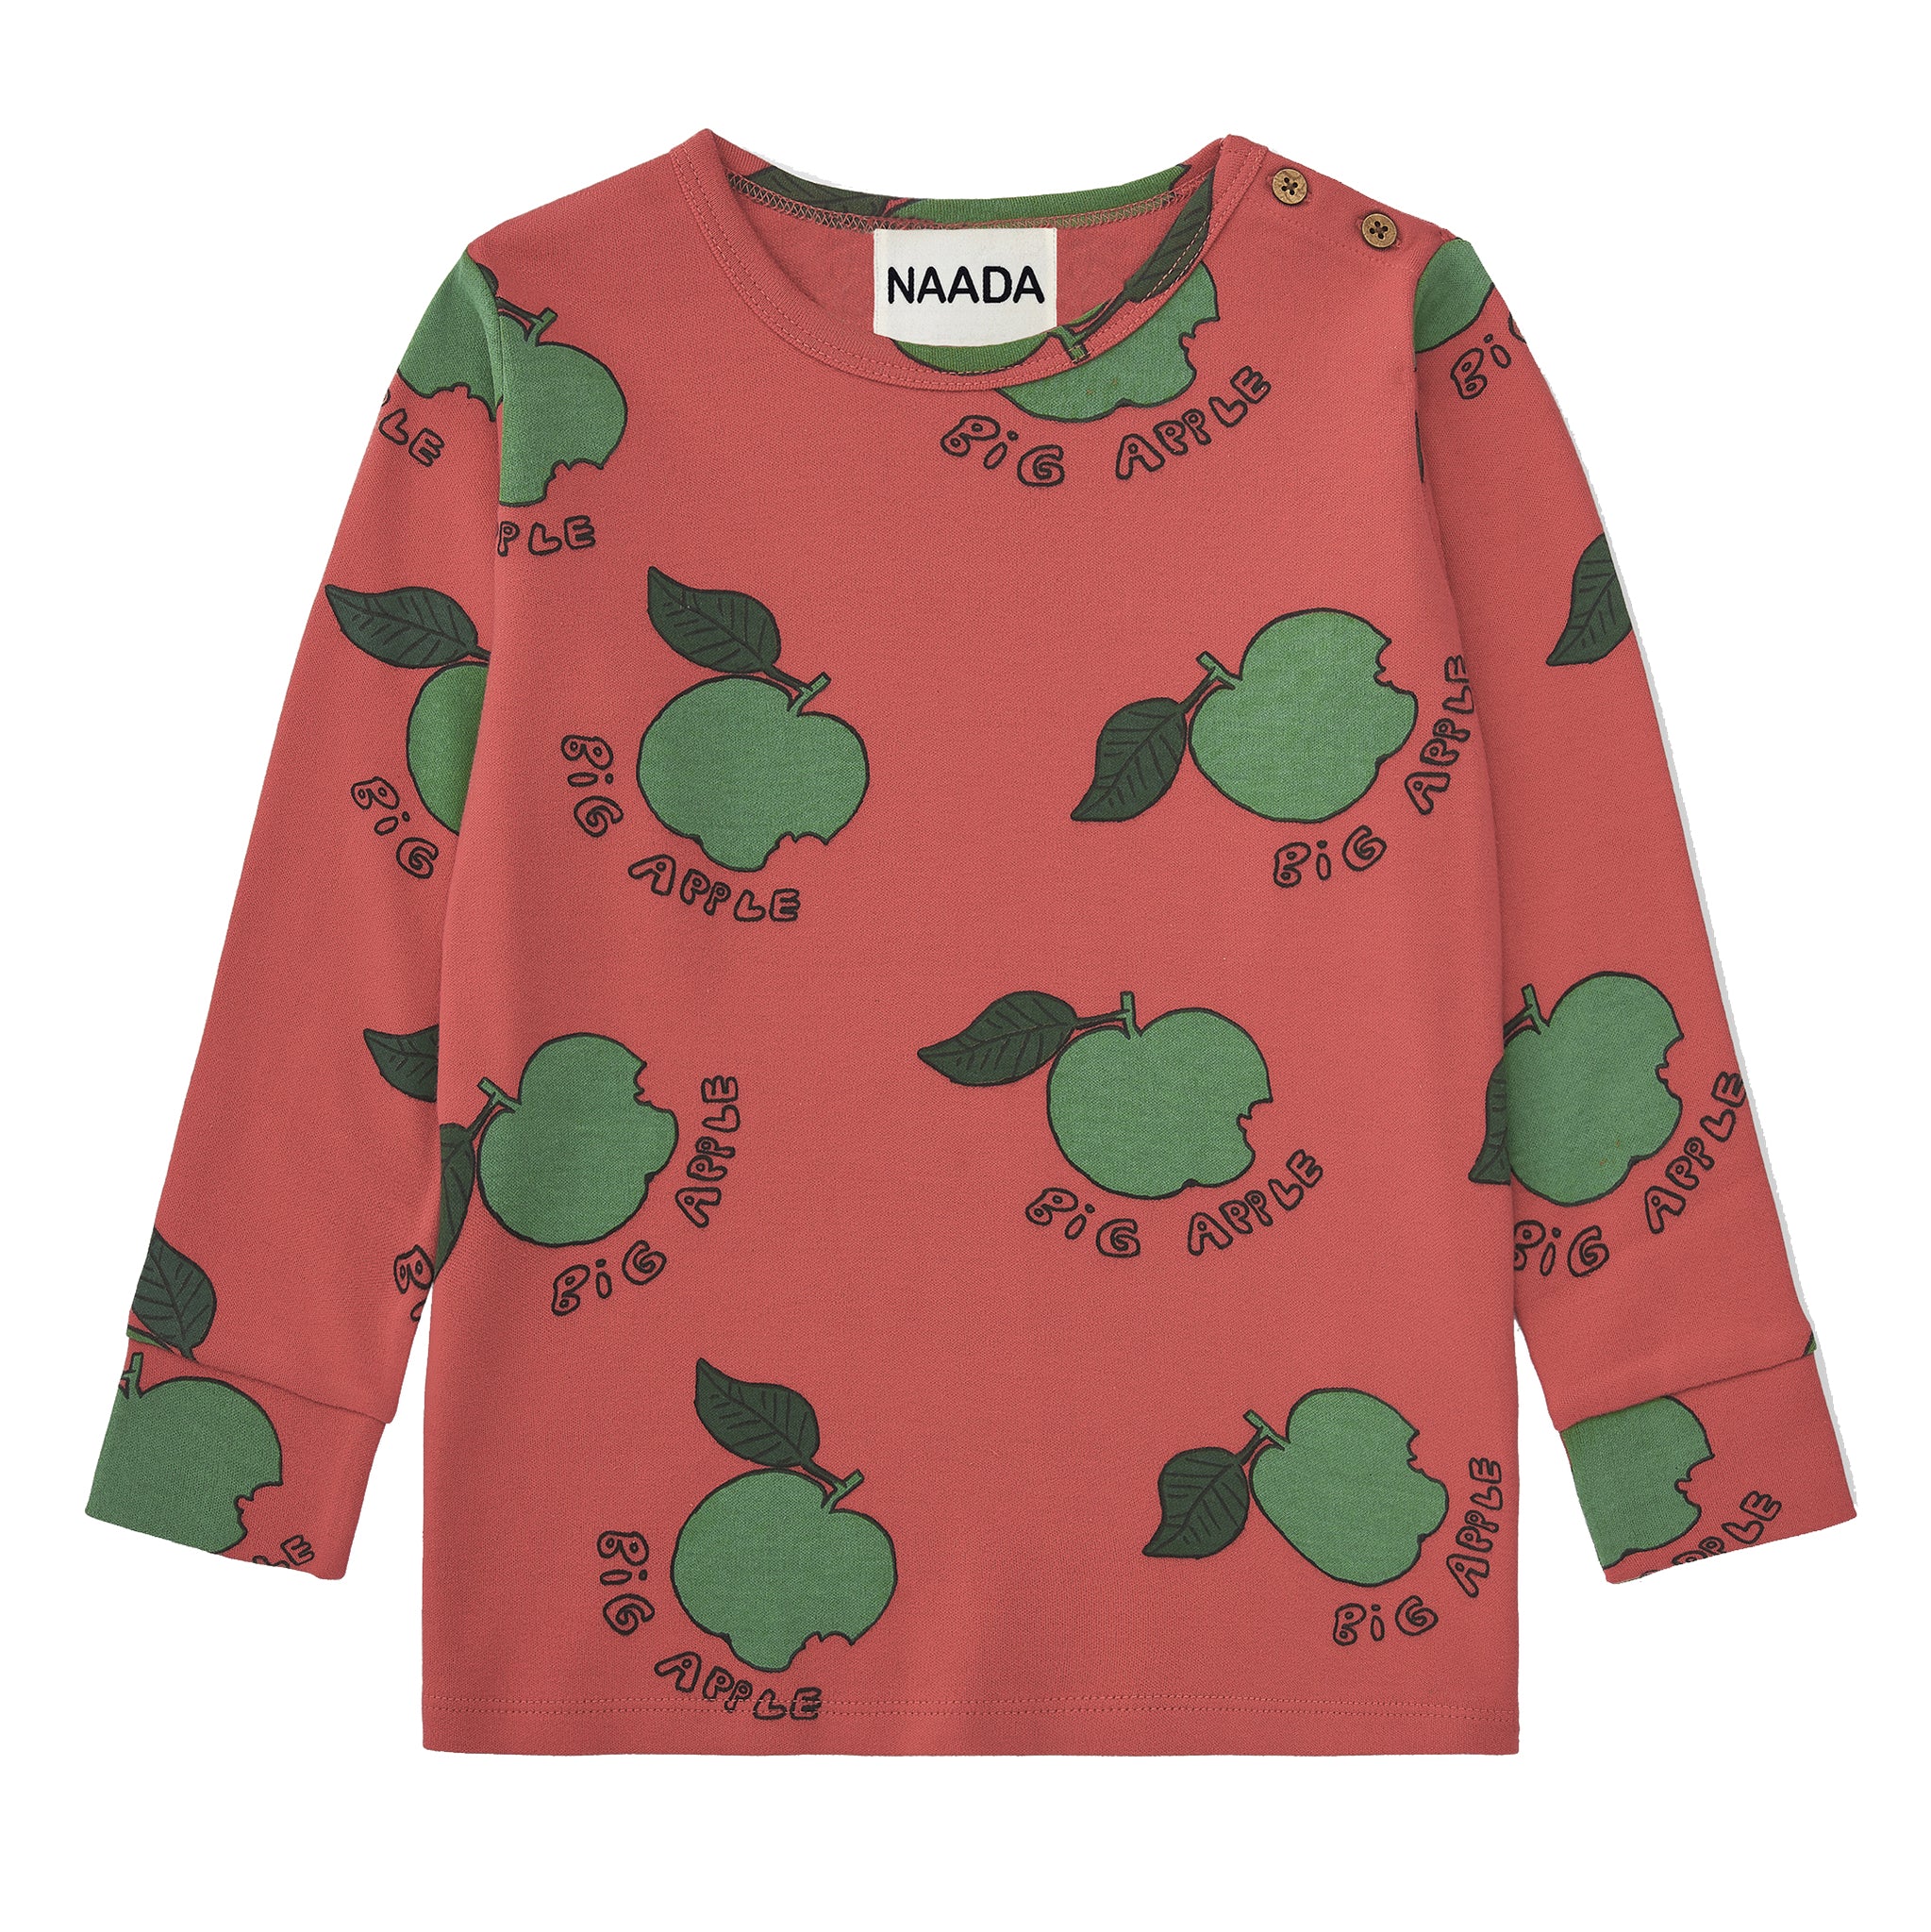 Naada Organic T-shirt- Big Apple – The Green Crib & Kid